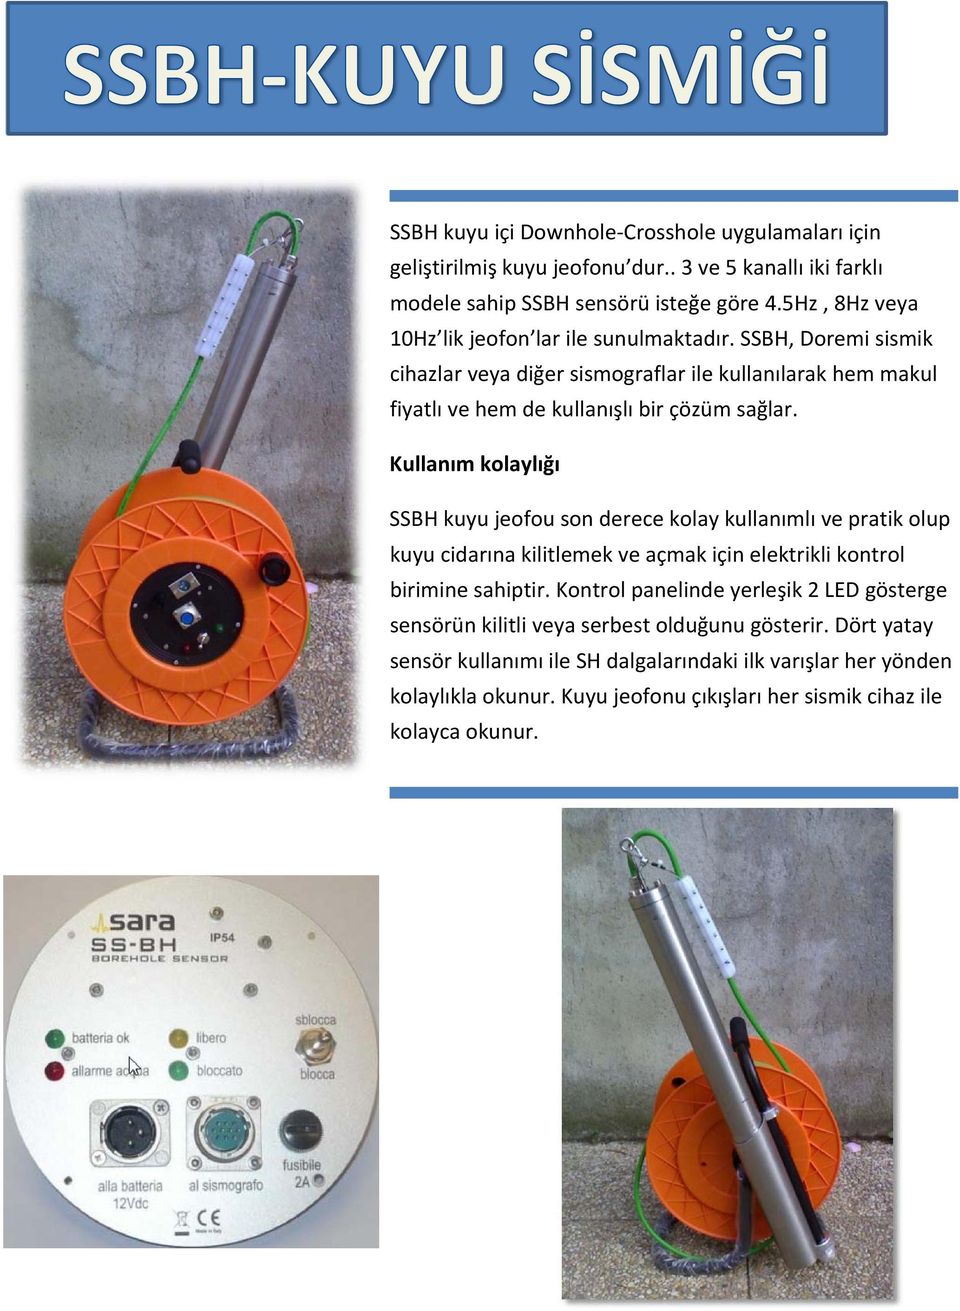 Kullanım kolaylığı SSBH kuyu jeofou son derece kolay kullanımlı ve pratik olup kuyucidarına kilitlemekve açmakiçin elektrikli kontrol birimine sahiptir.